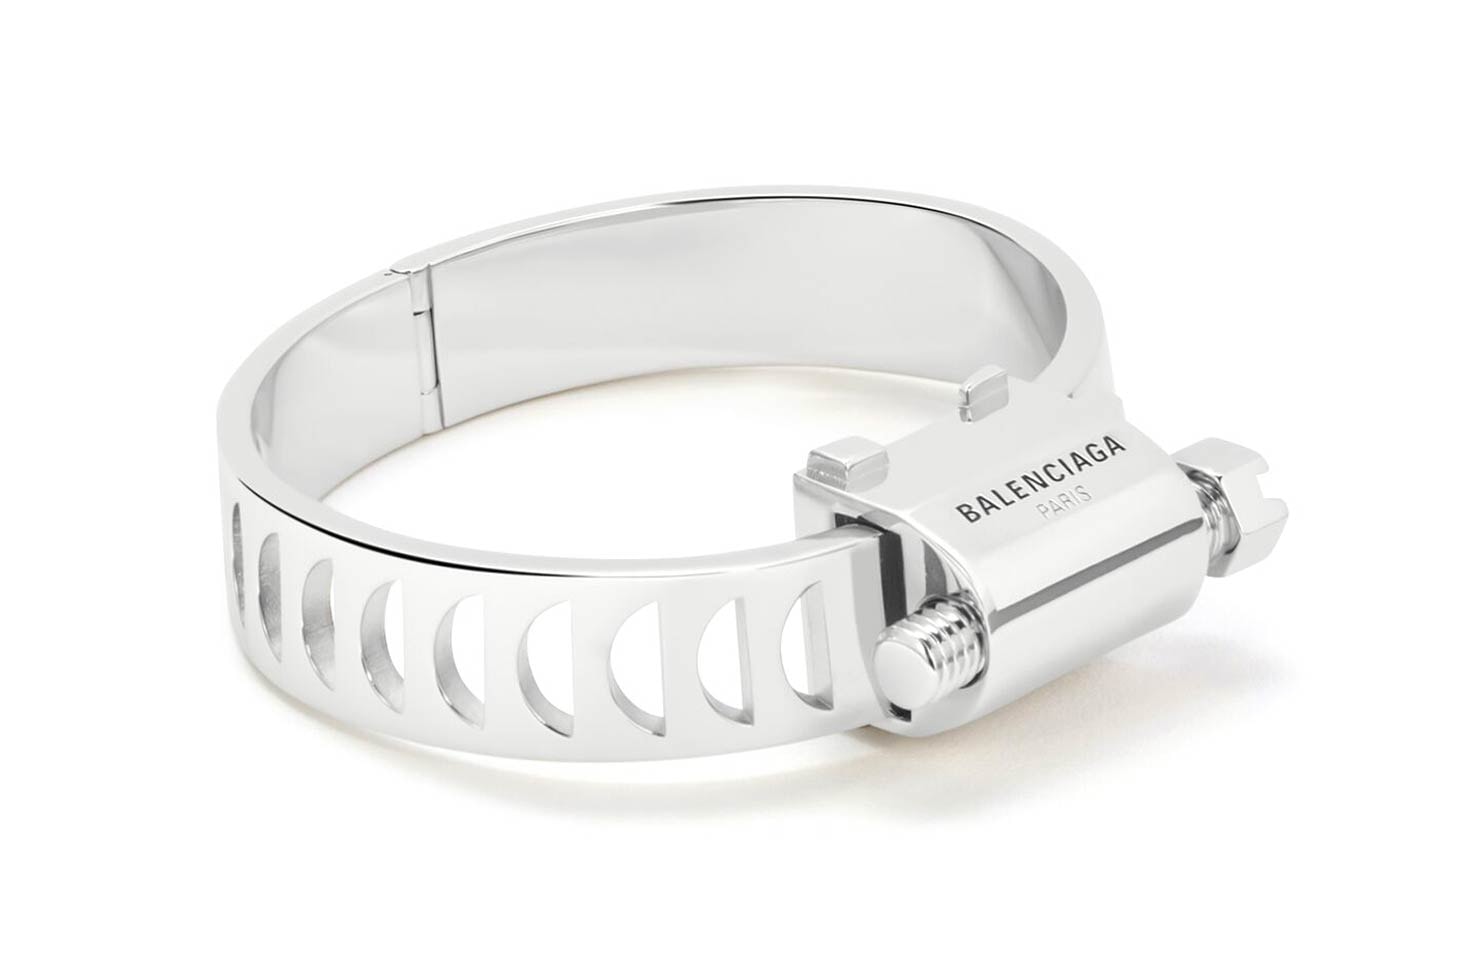 Balenciaga Silver Tool Release | Hypebeast